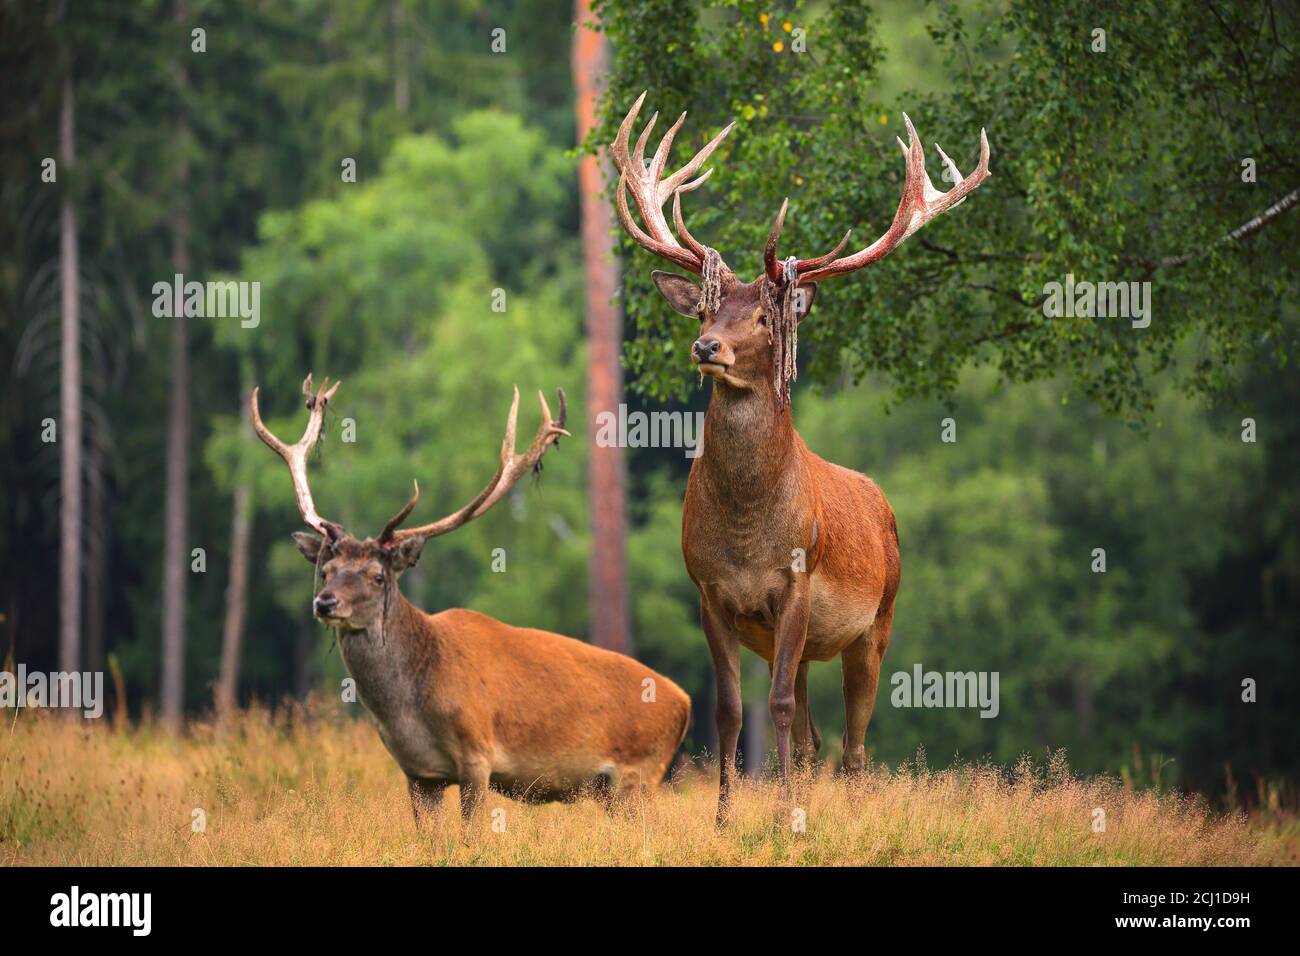 Ciervo rojo (Cervus elaphus), dos ciervos después de frotar el terciopelo en un glade en verano, Alemania, Sajonia, montañas Erz Foto de stock